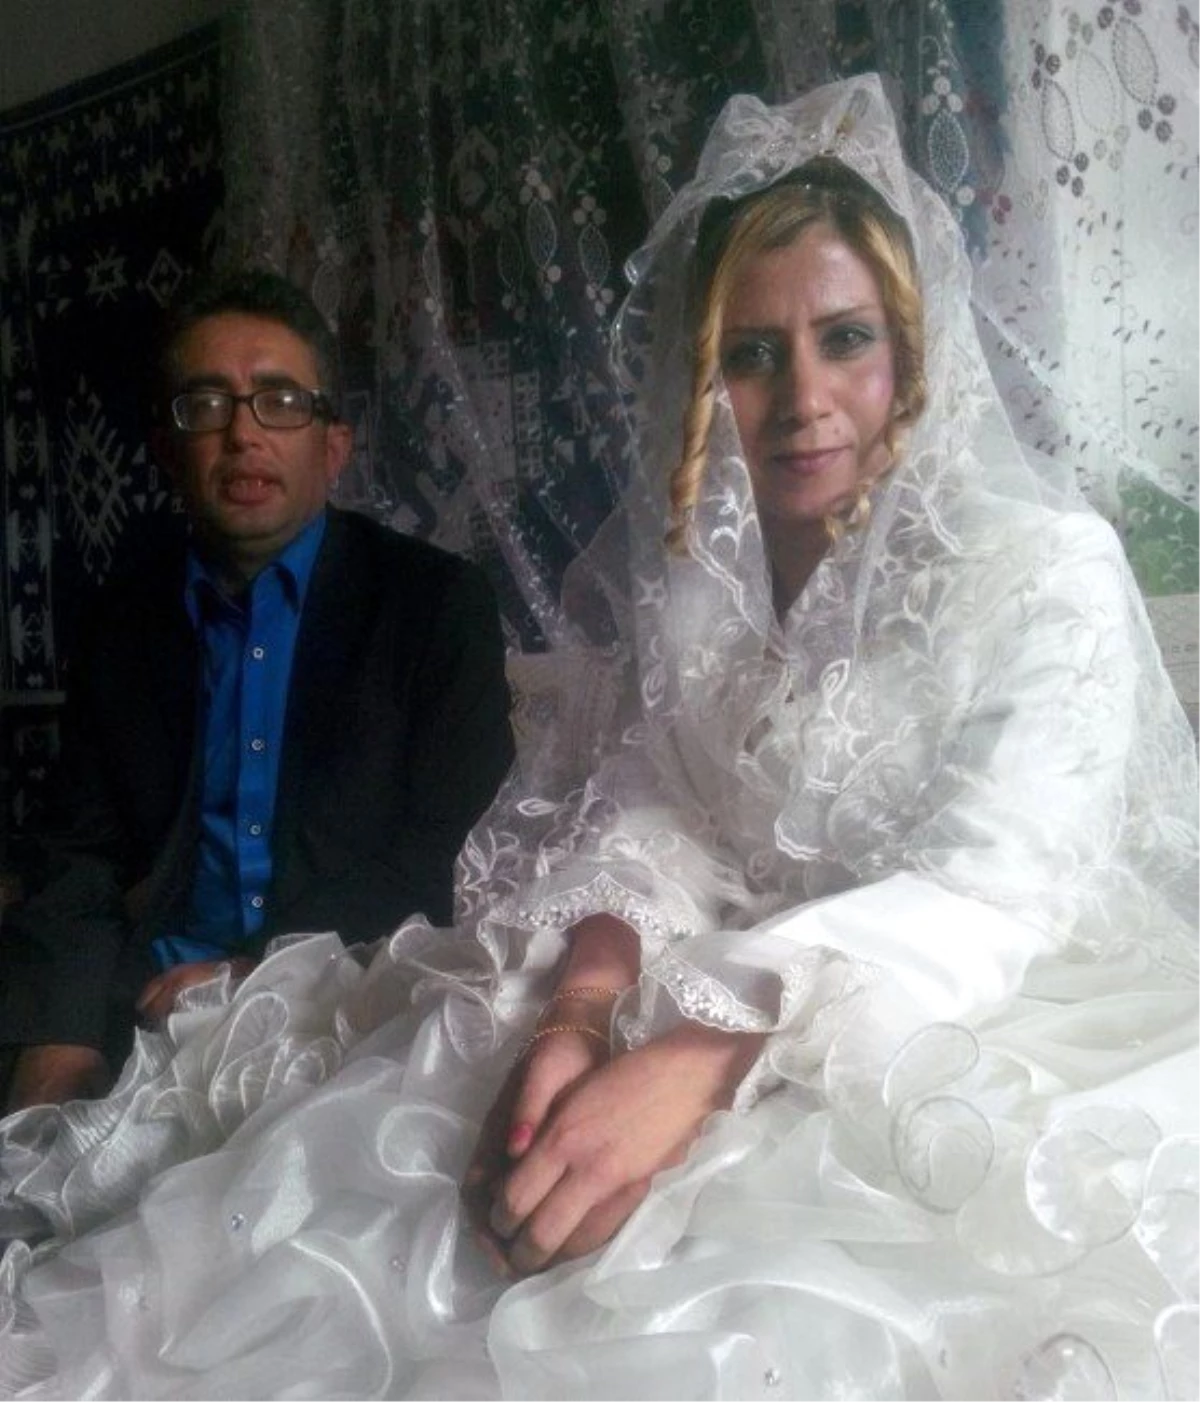 Suriyeli Gelin Düğün Sabahı Altınları Alıp Kaçtı